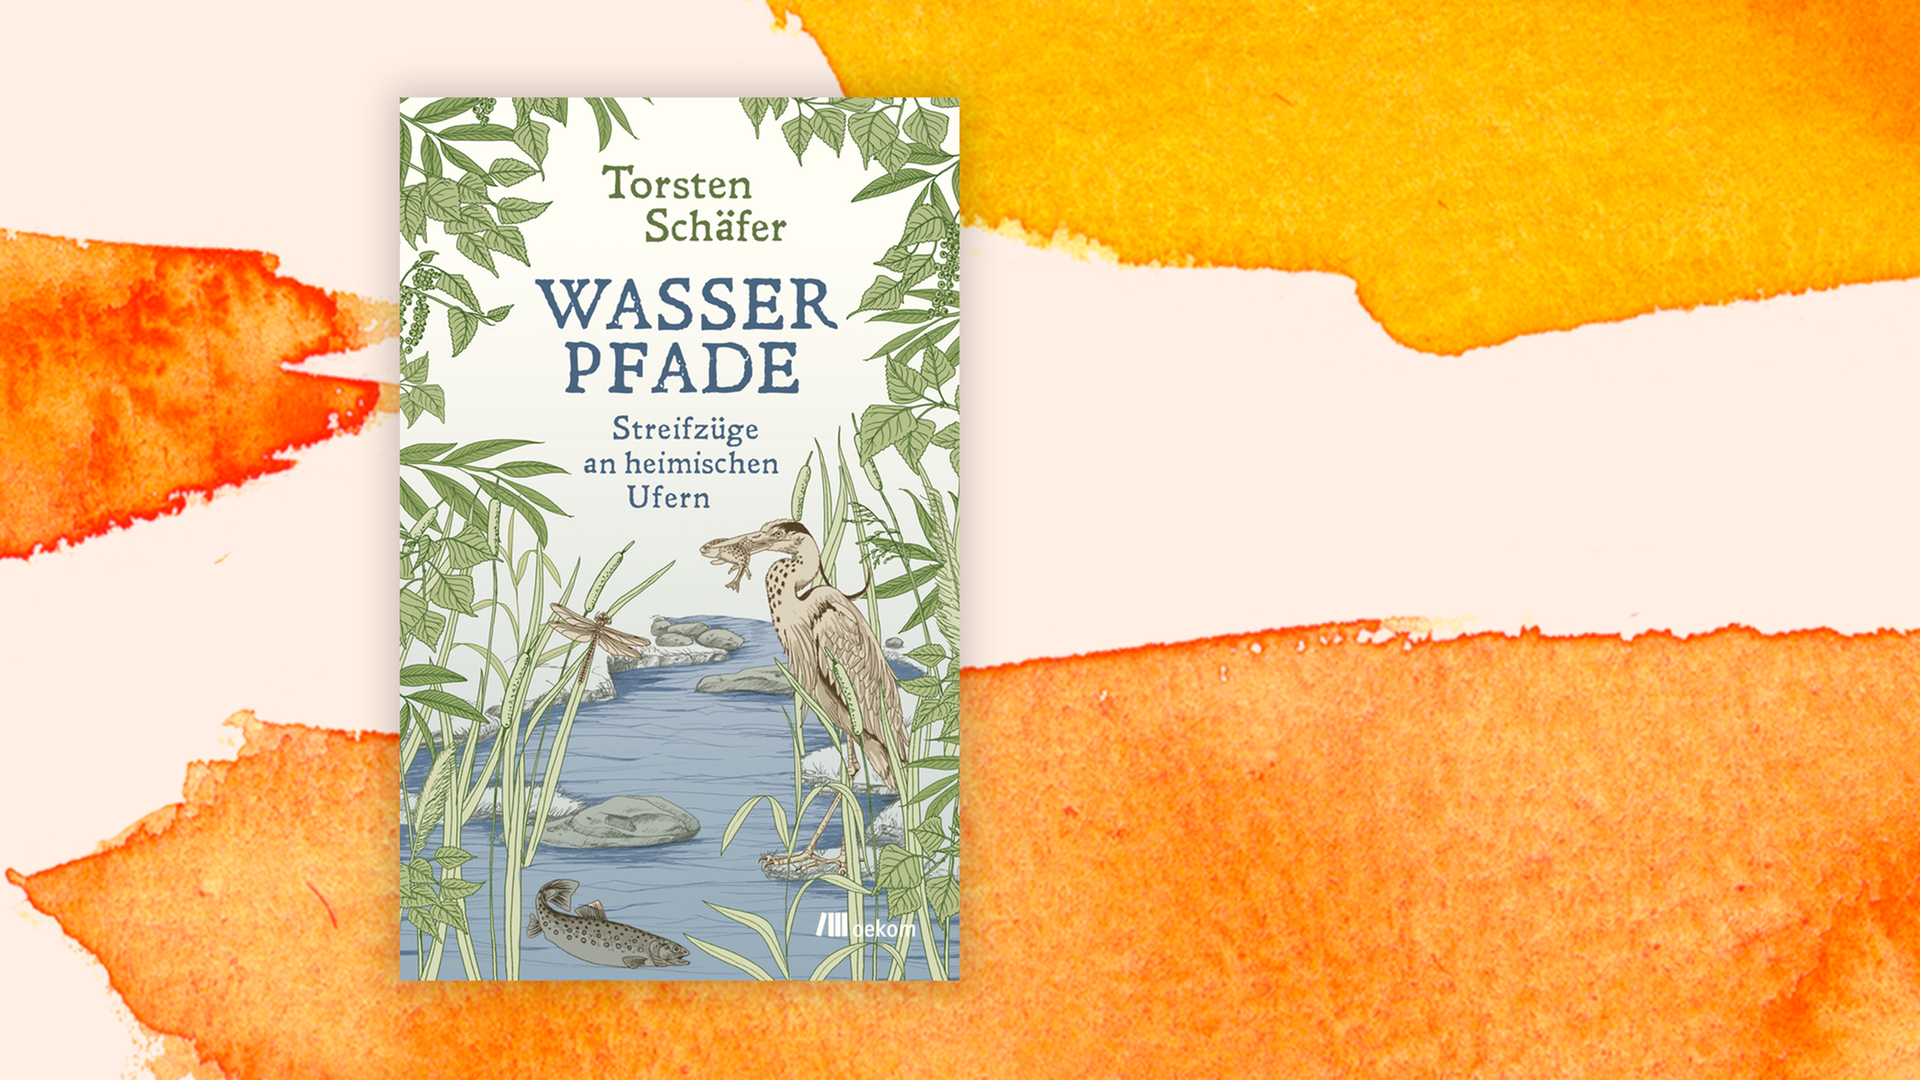 Zu sehen ist das Cover des Buches "Wasserpfade" von Torsten Schäfer.